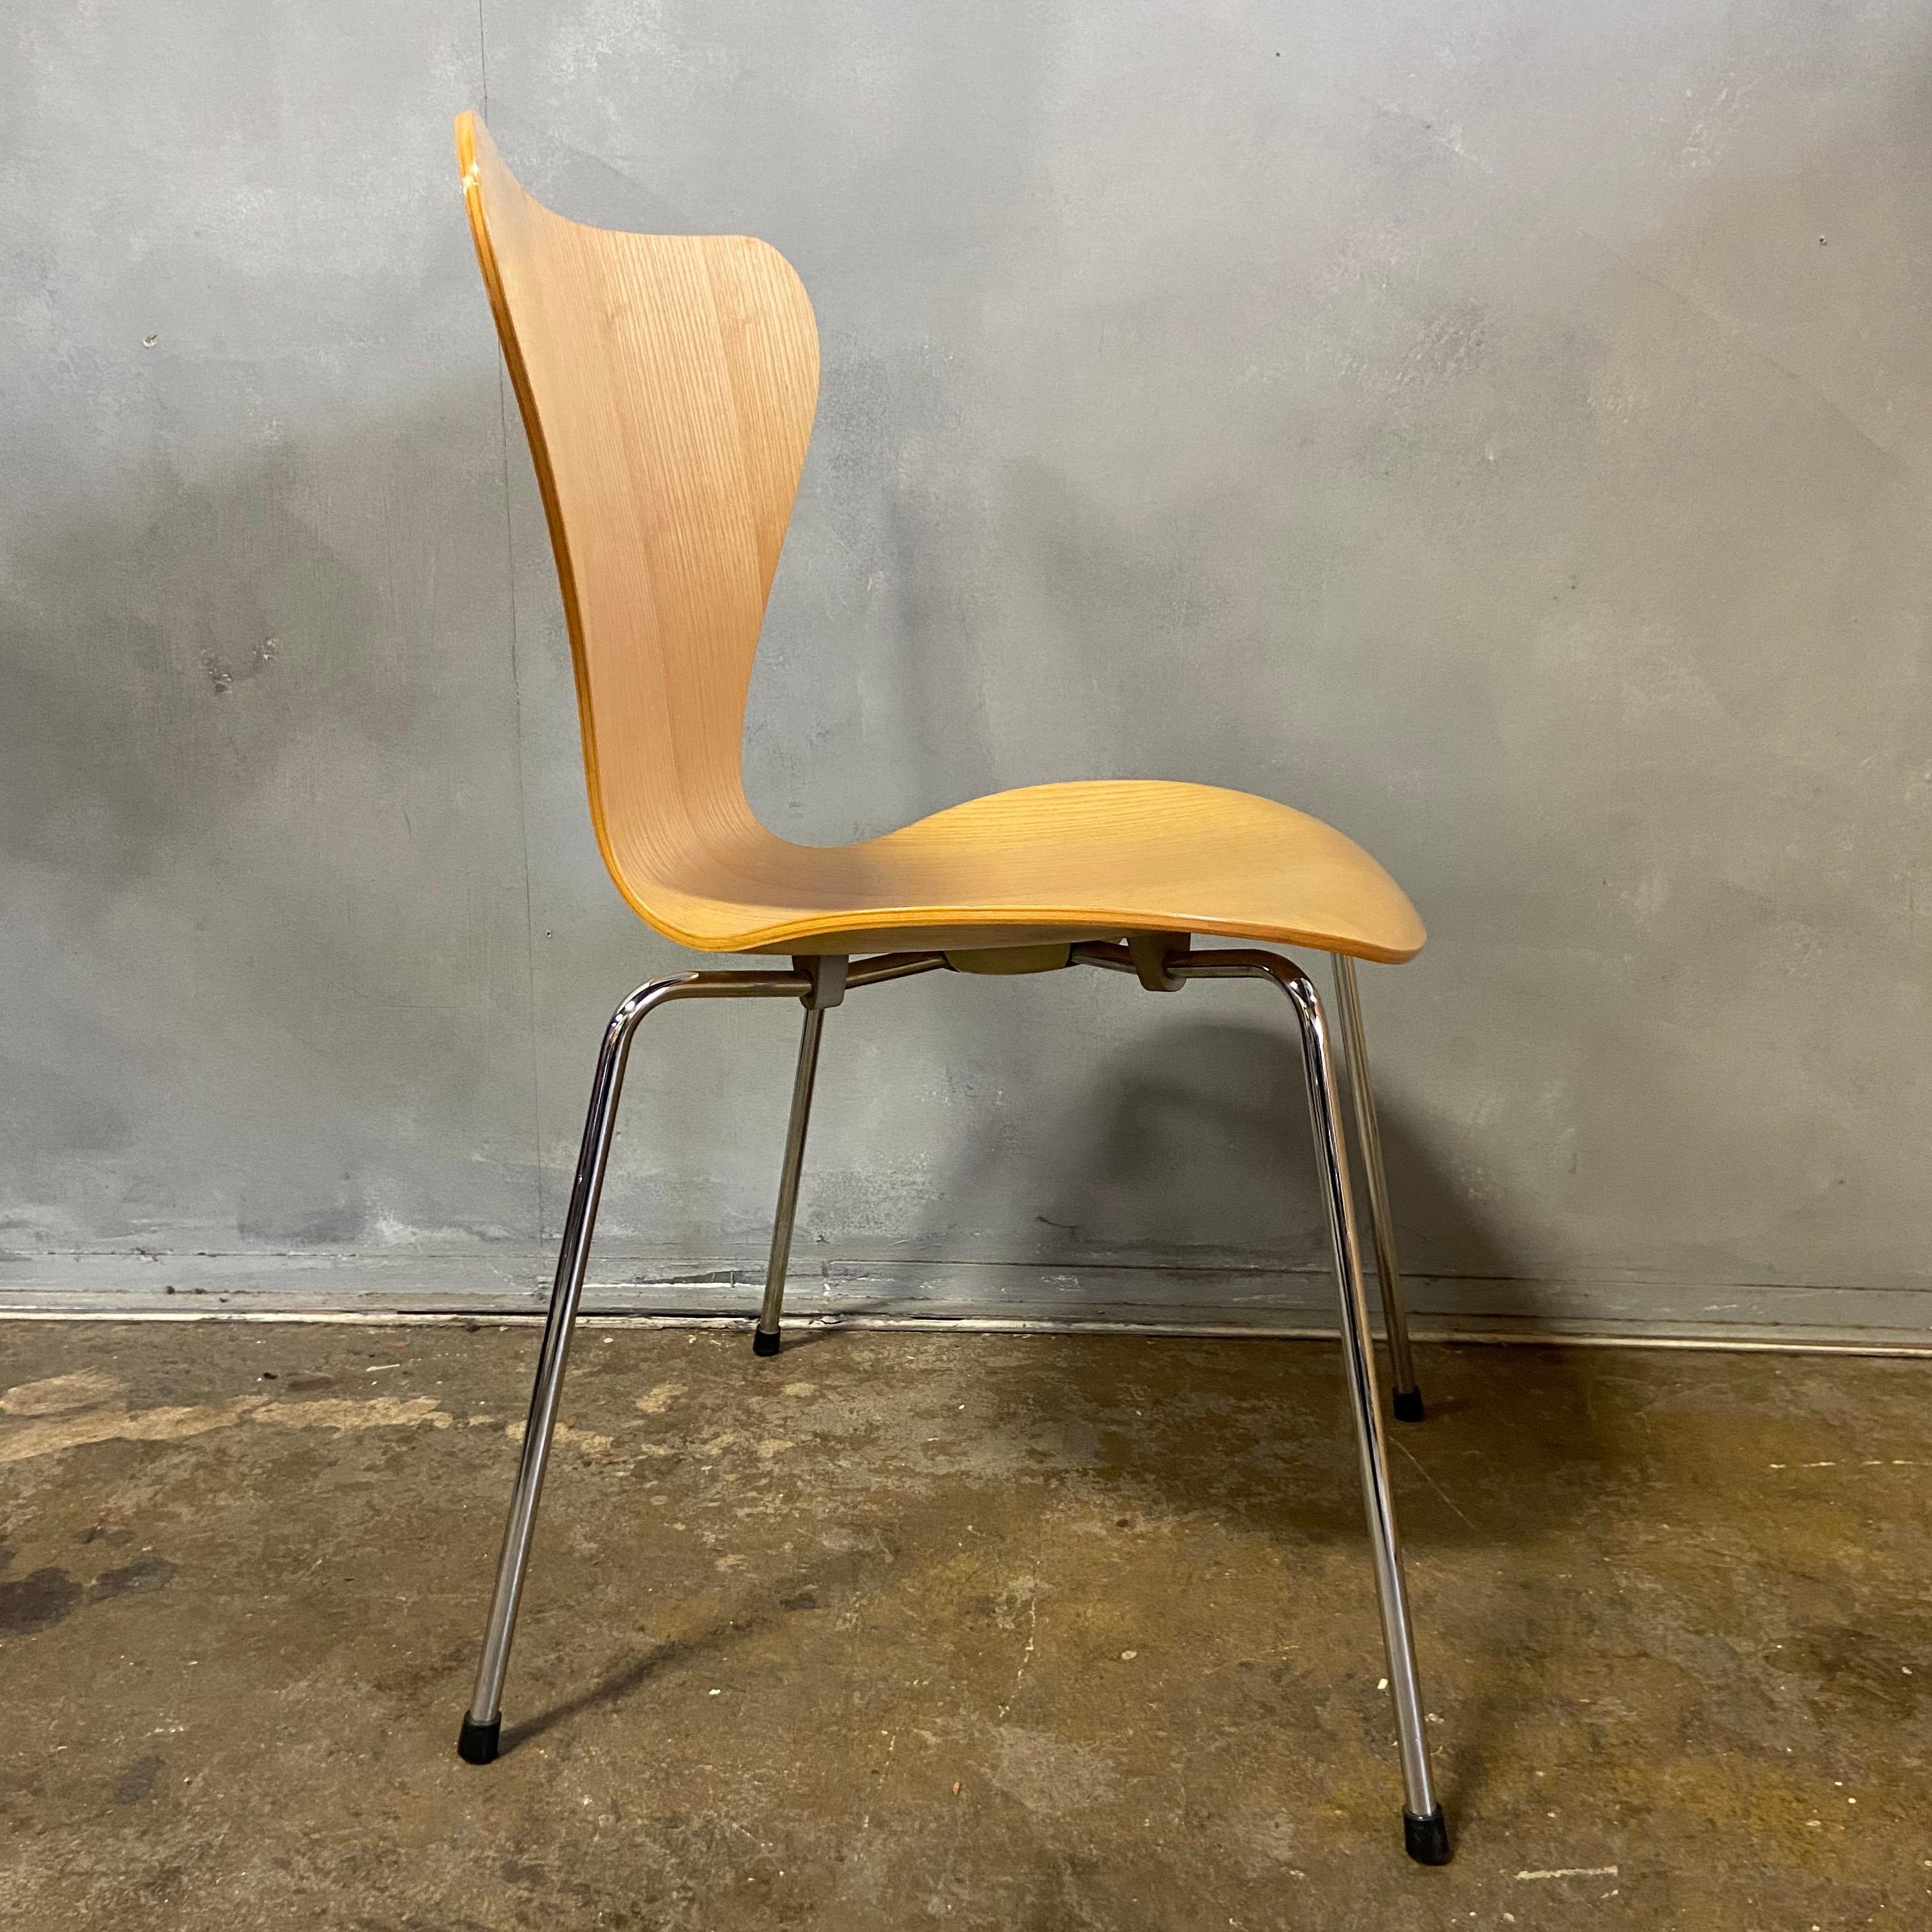 8 Stühle der Serie 7 von Arne Jacobsen für Fritz Hansen. Dieses ikonische Design ist einer der erfolgreichsten Stühle, die je aus dieser Ära produziert wurden. Unglaublich bequem und vielseitig.  
   
 